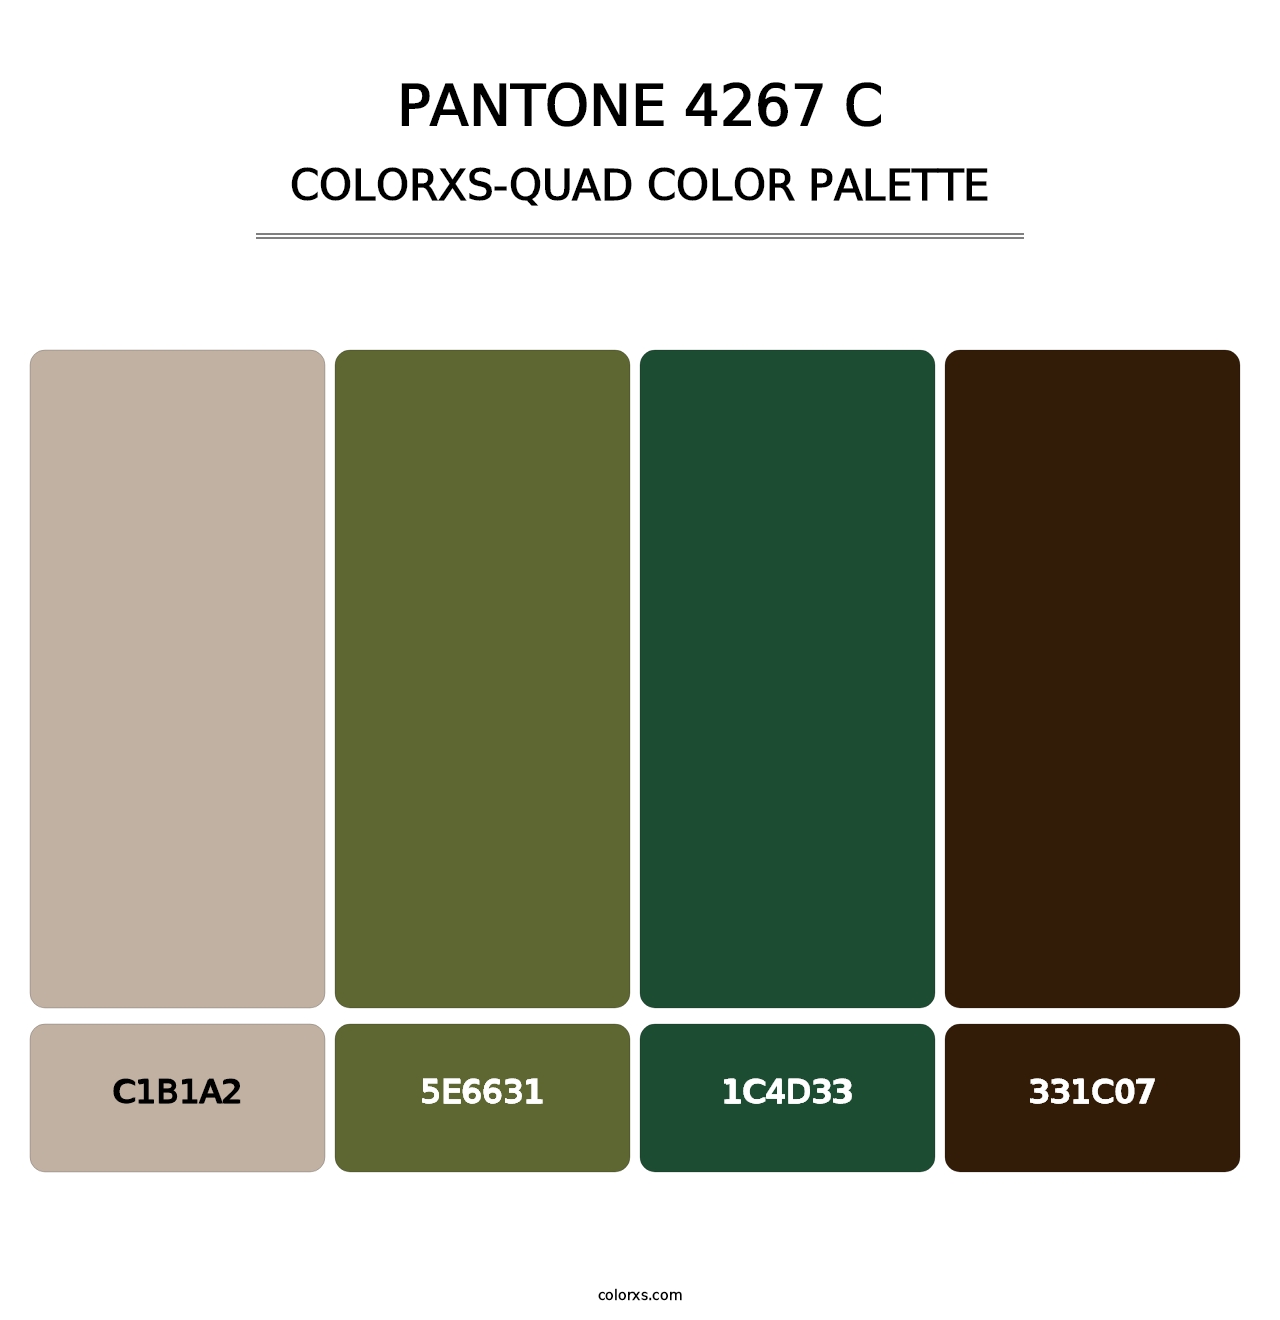 PANTONE 4267 C - Colorxs Quad Palette